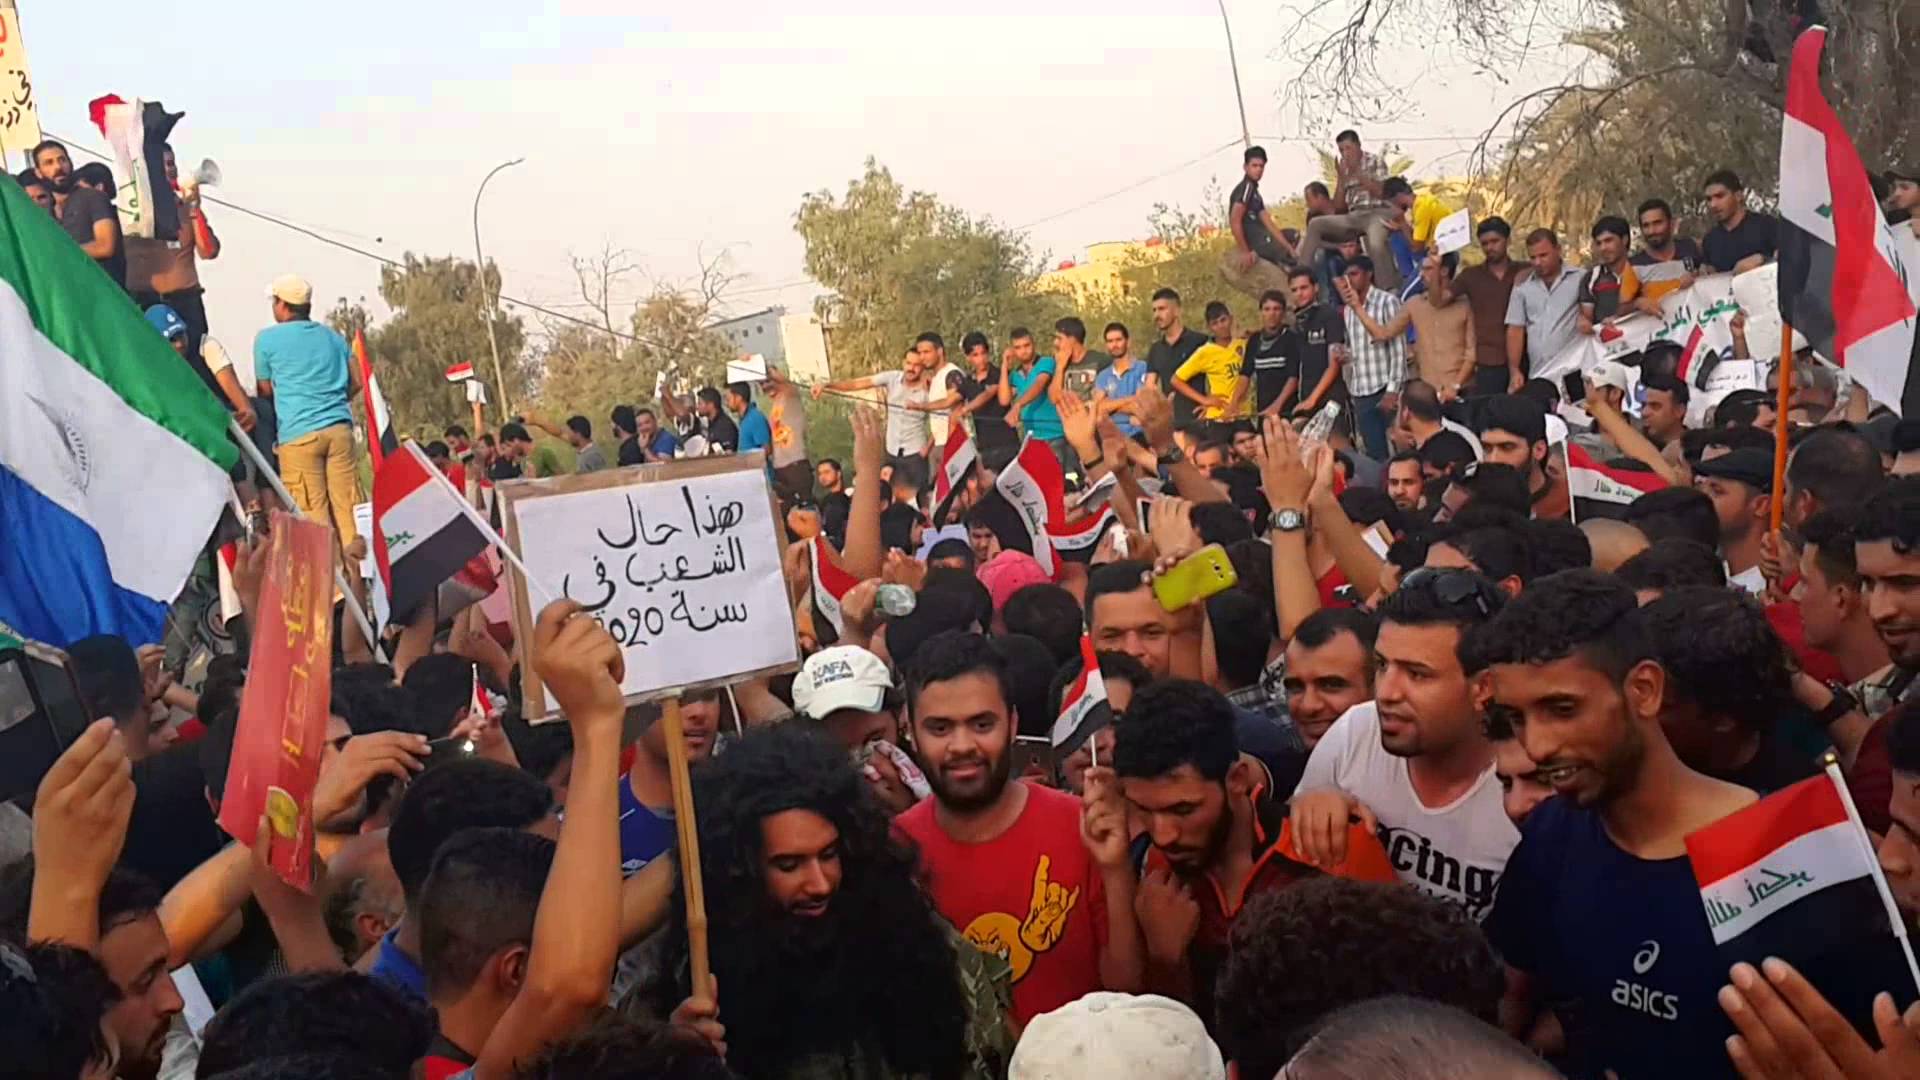 منعطف خطير: تظاهرات العراق استياء شعبي أم محاولة لتقويض إيران؟!